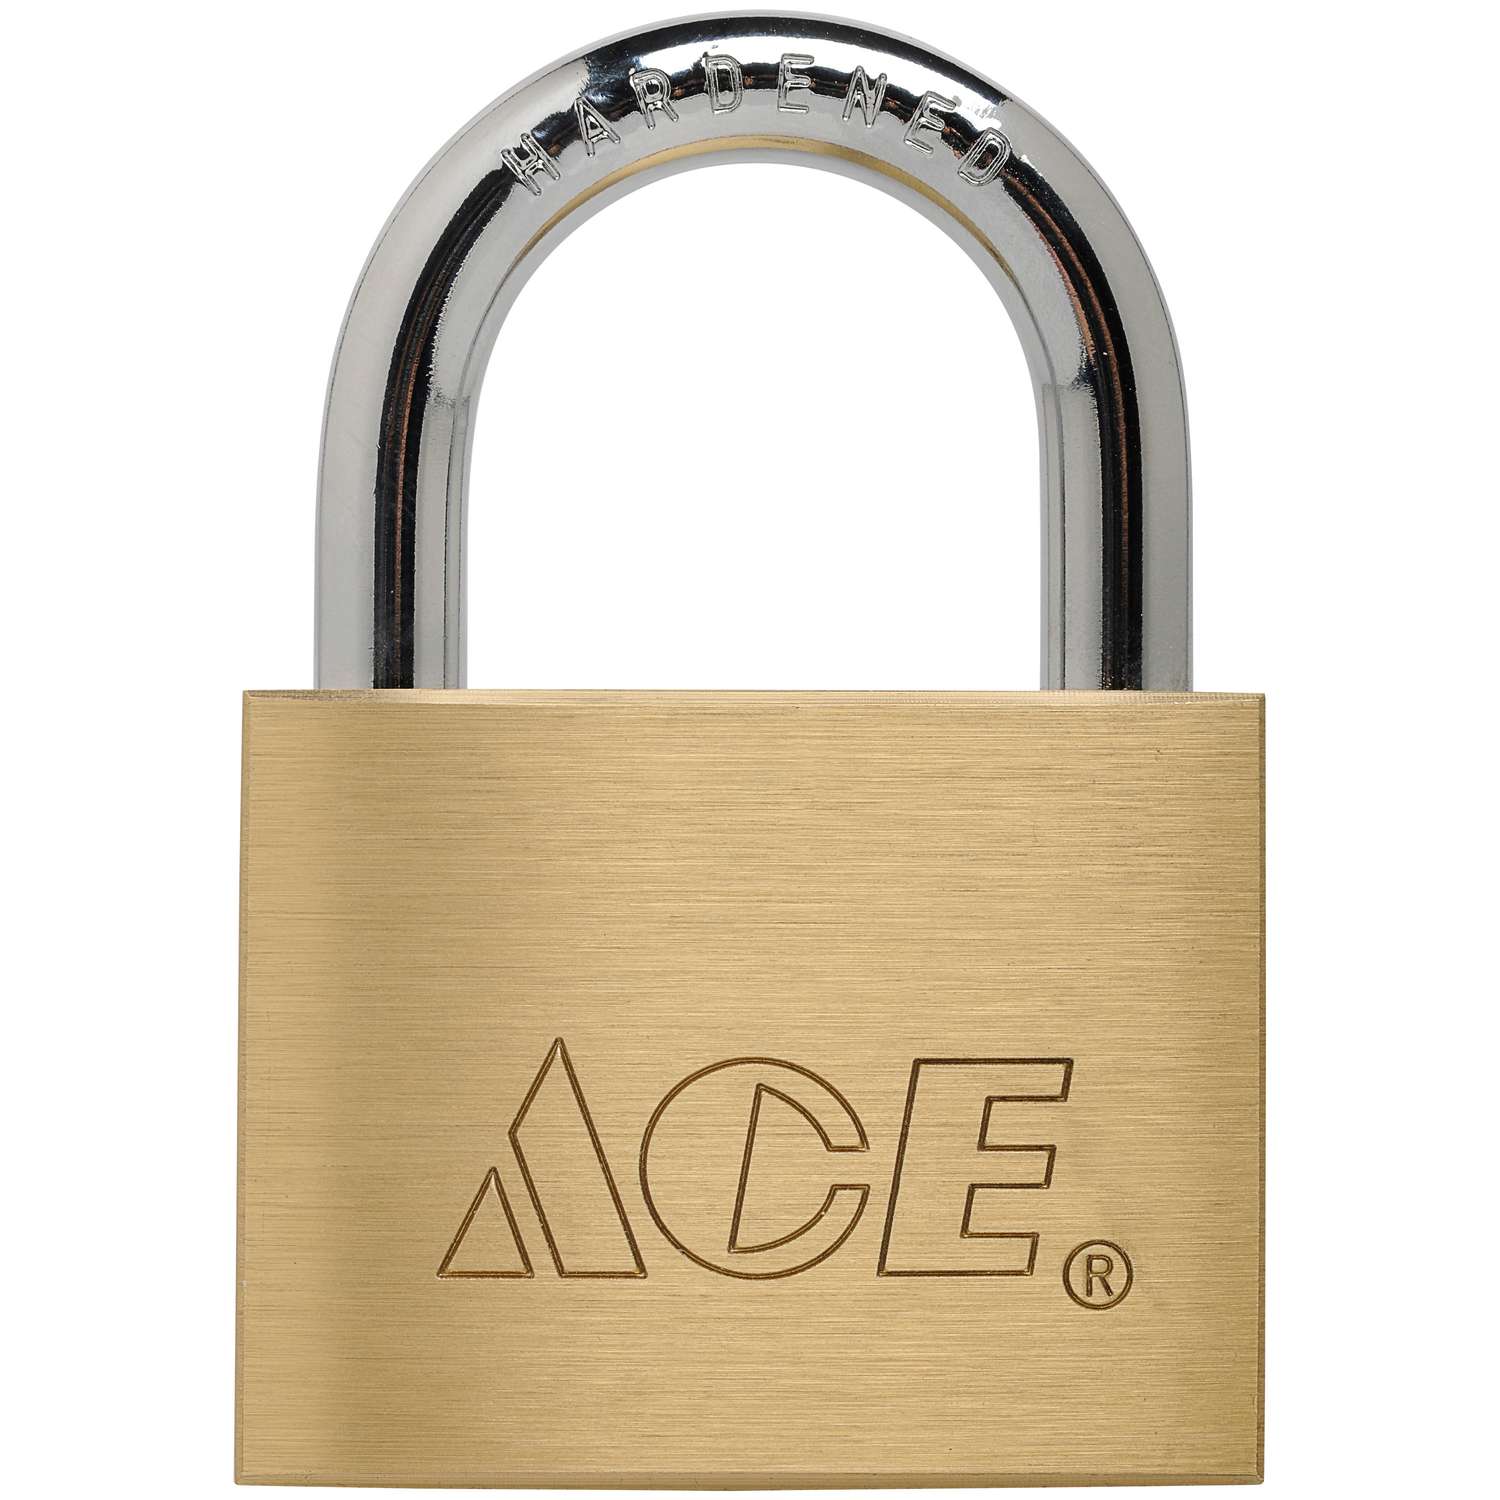 Ace 1-7/8 in. W X 2-3/4 in. L Brass Double Locking Padlock